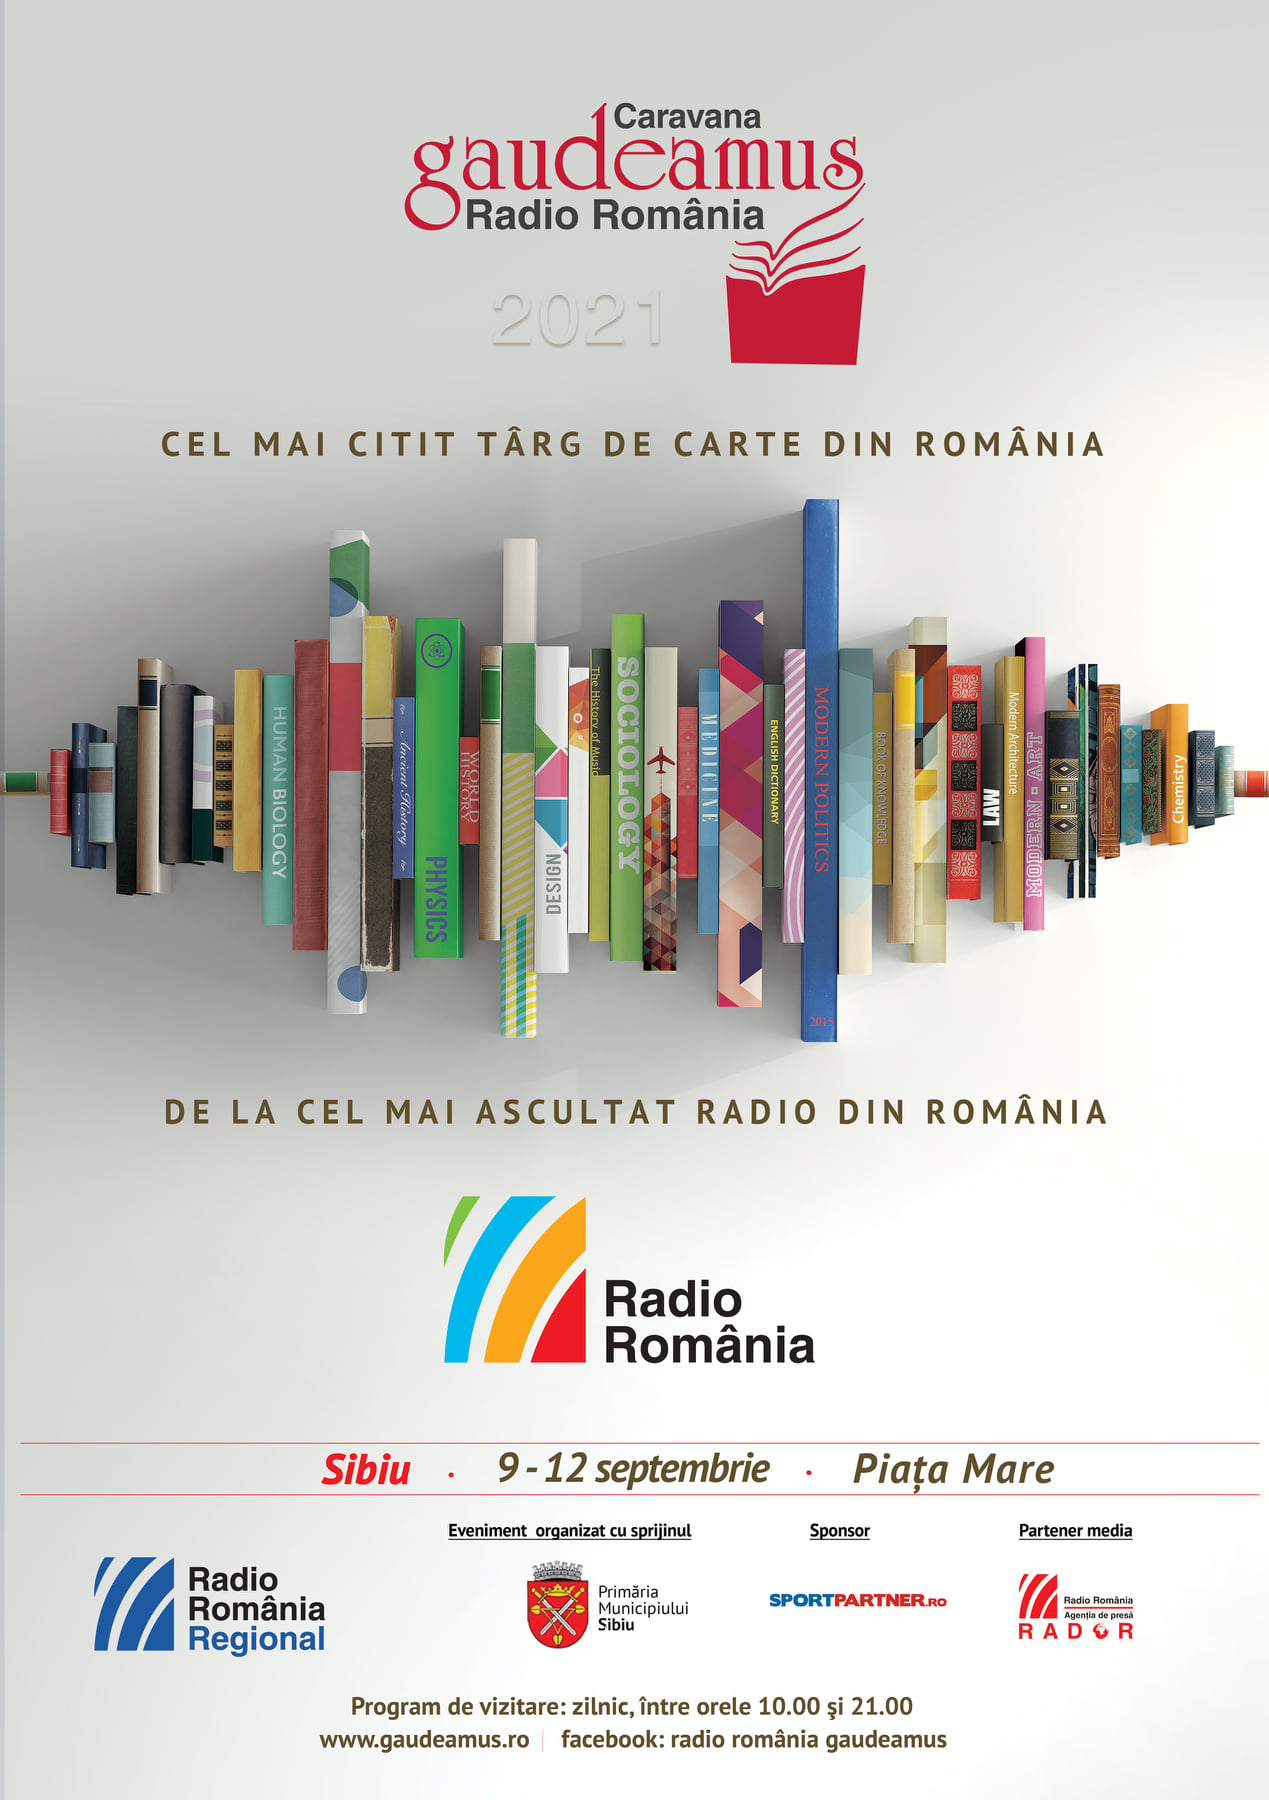 Radio România Gaudeamus